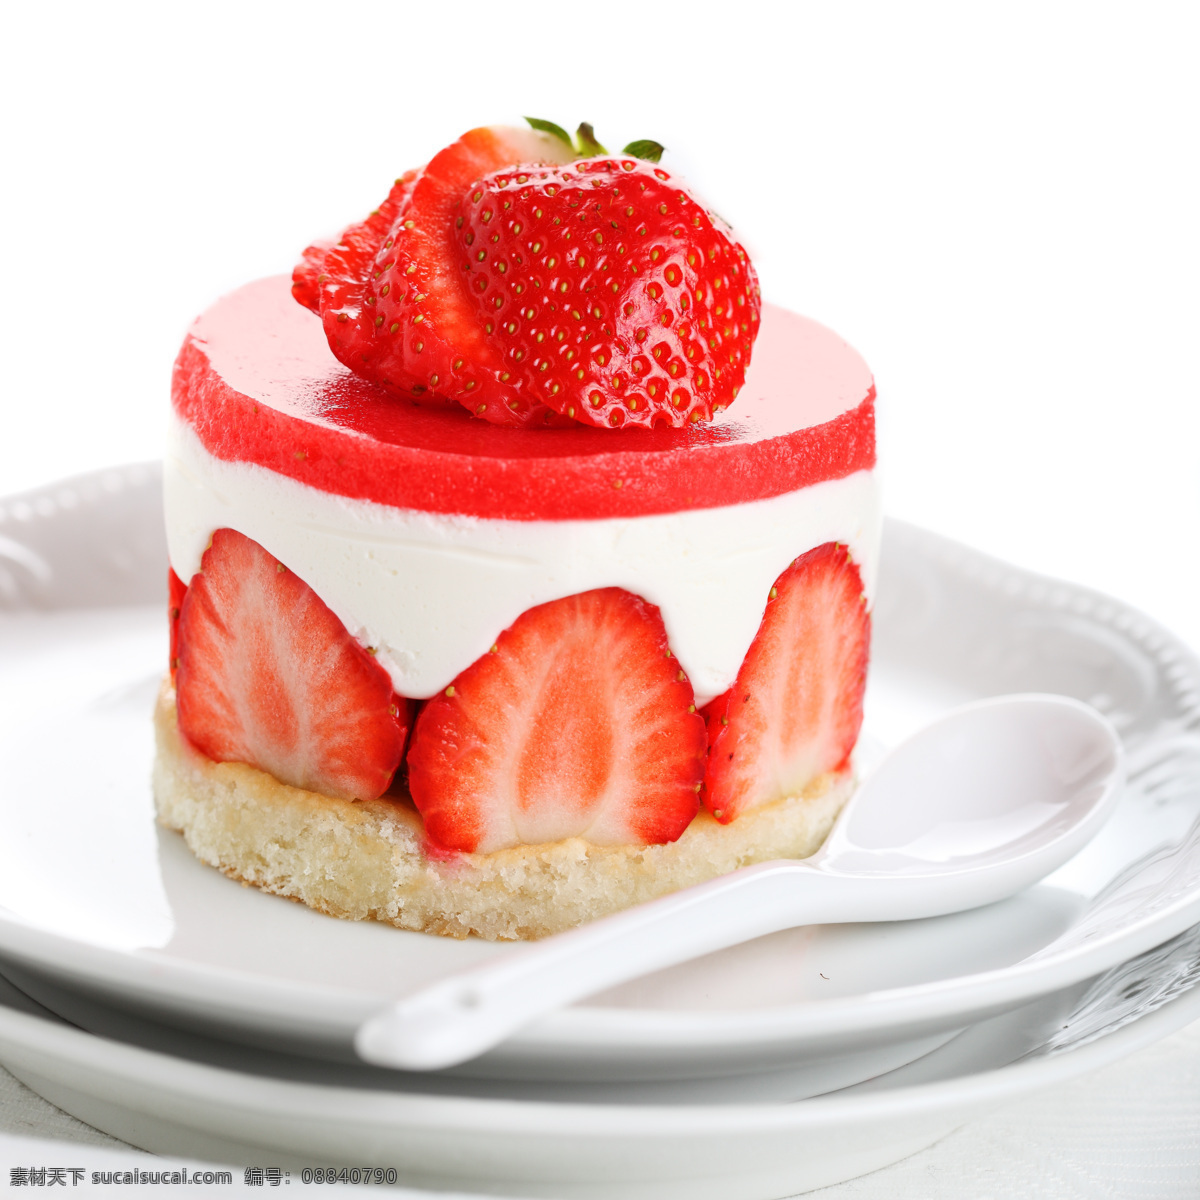 草莓 蛋糕 草莓蛋糕 新鲜草莓 新鲜水果 水果摄影 生日蛋糕图片 餐饮美食